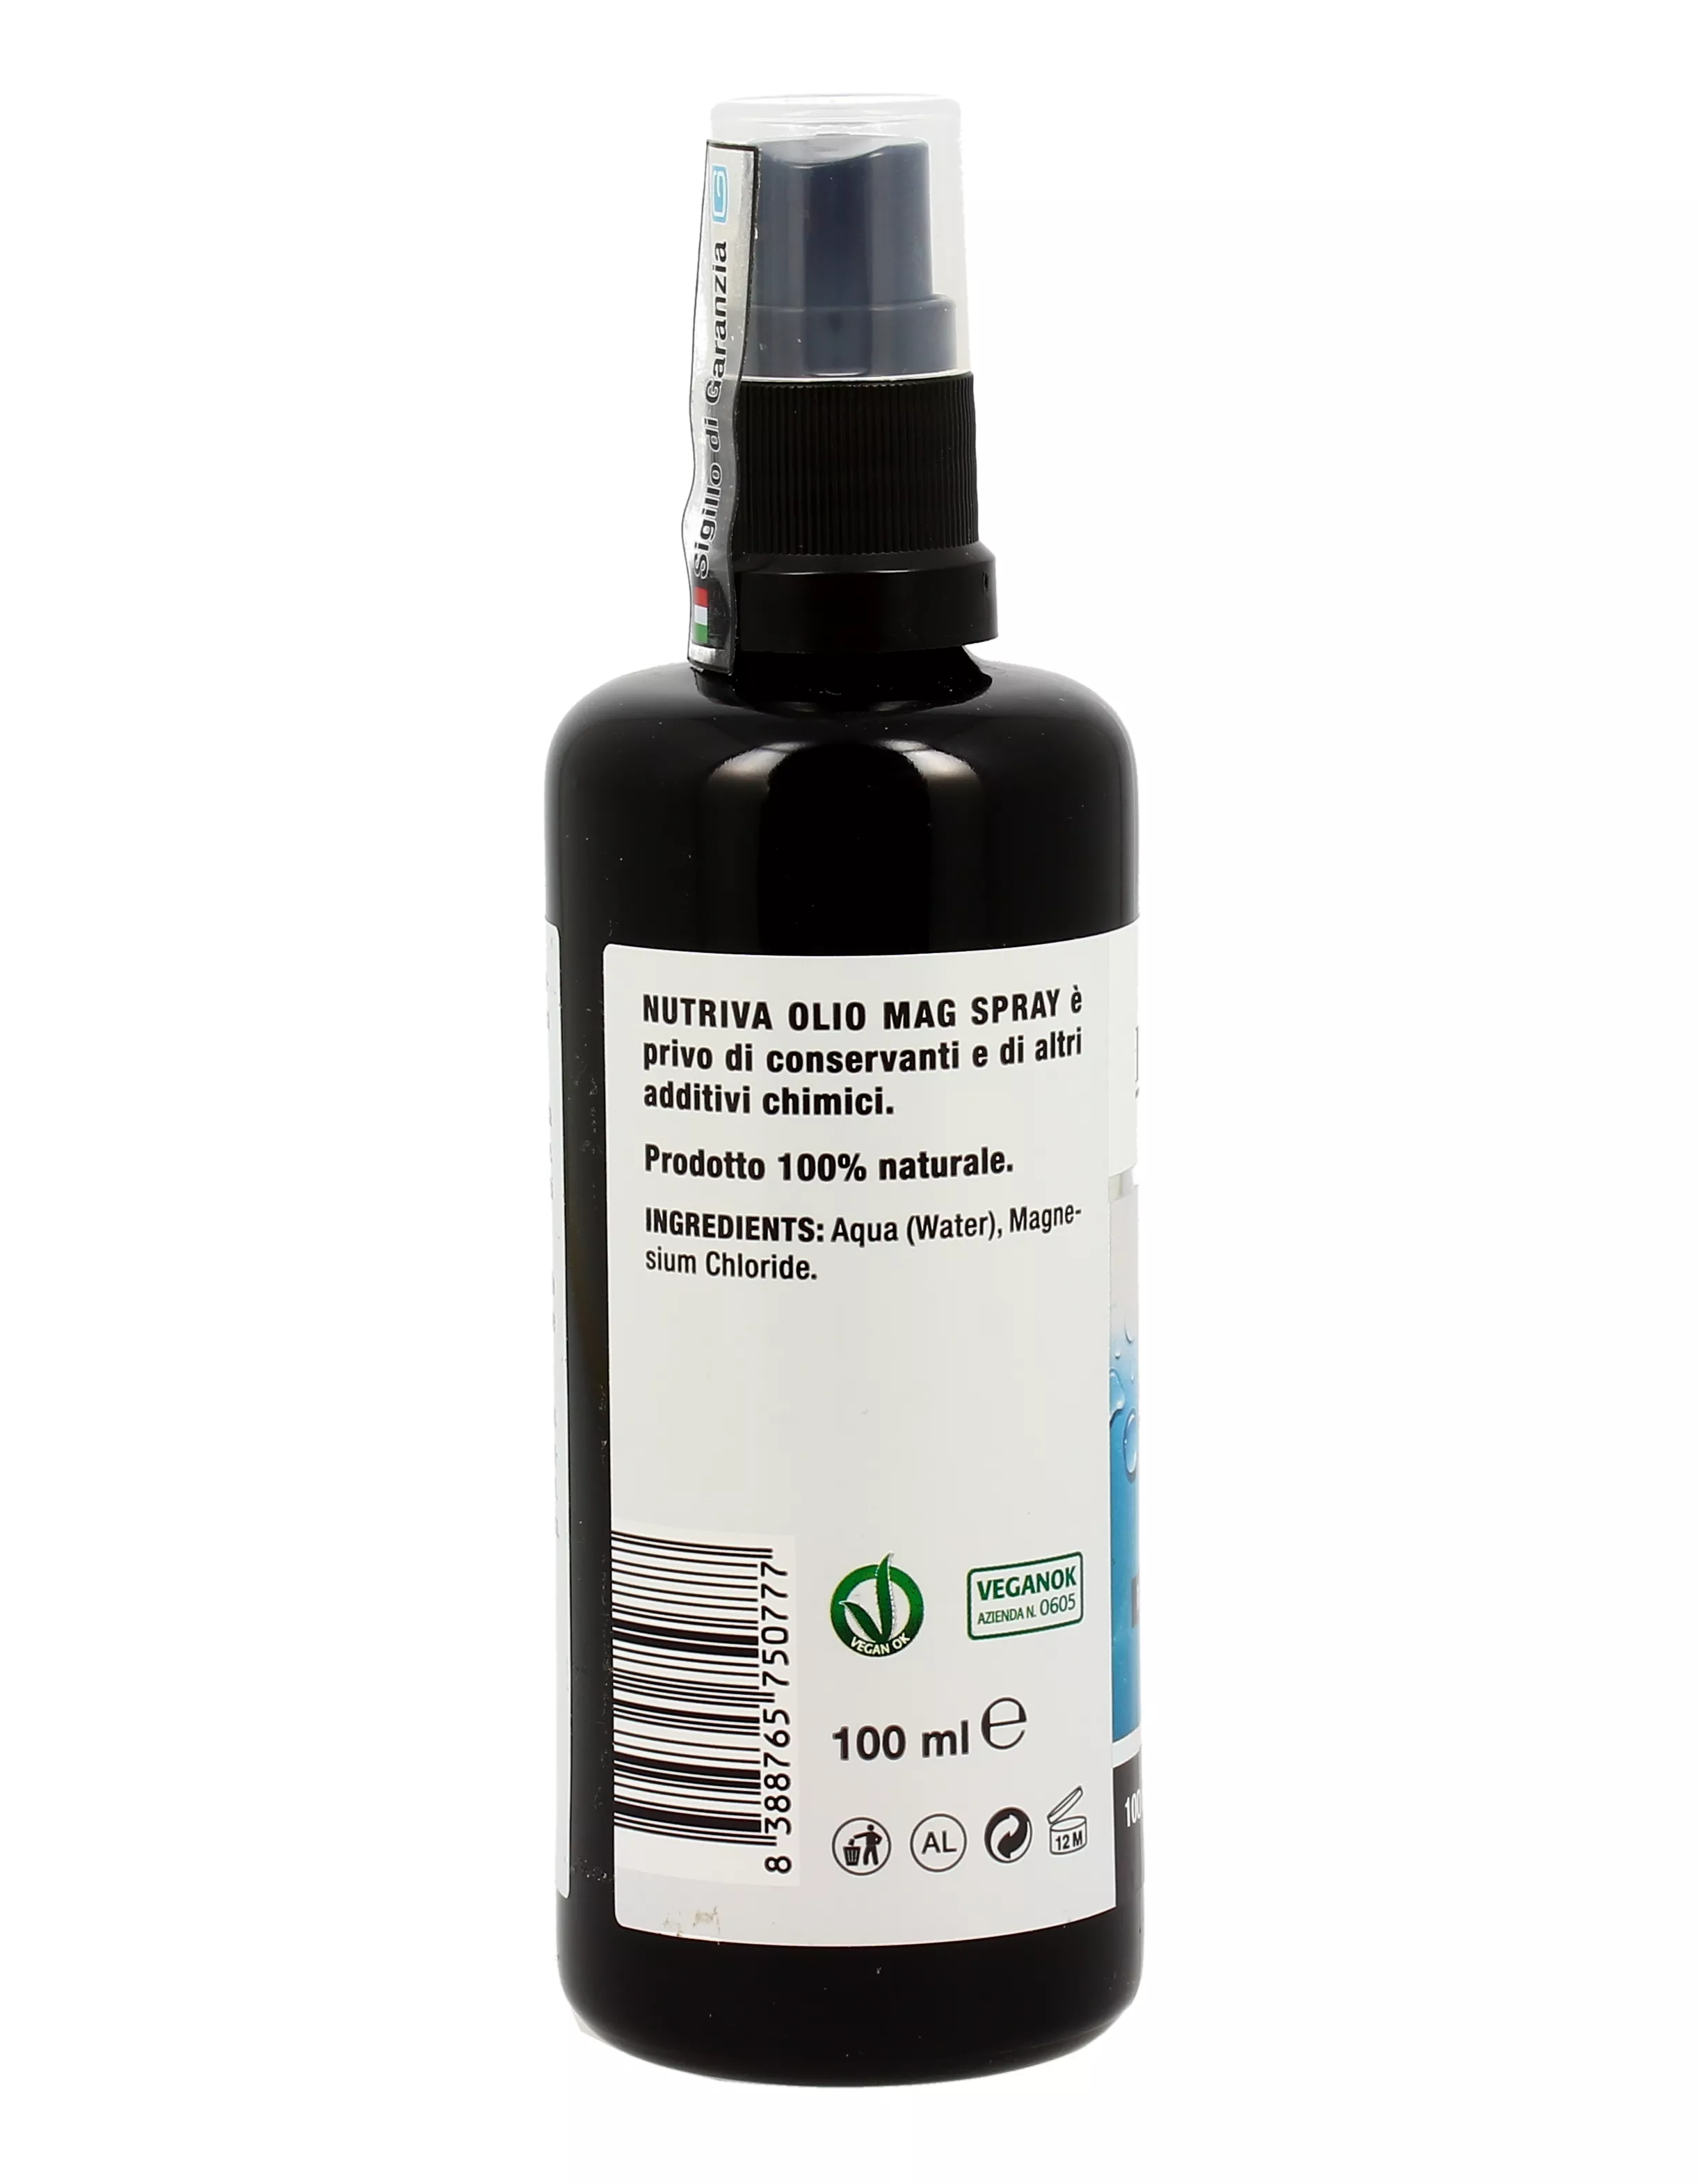 Olio Mag Spray - Nutriva - Magnesio 100% Naturale